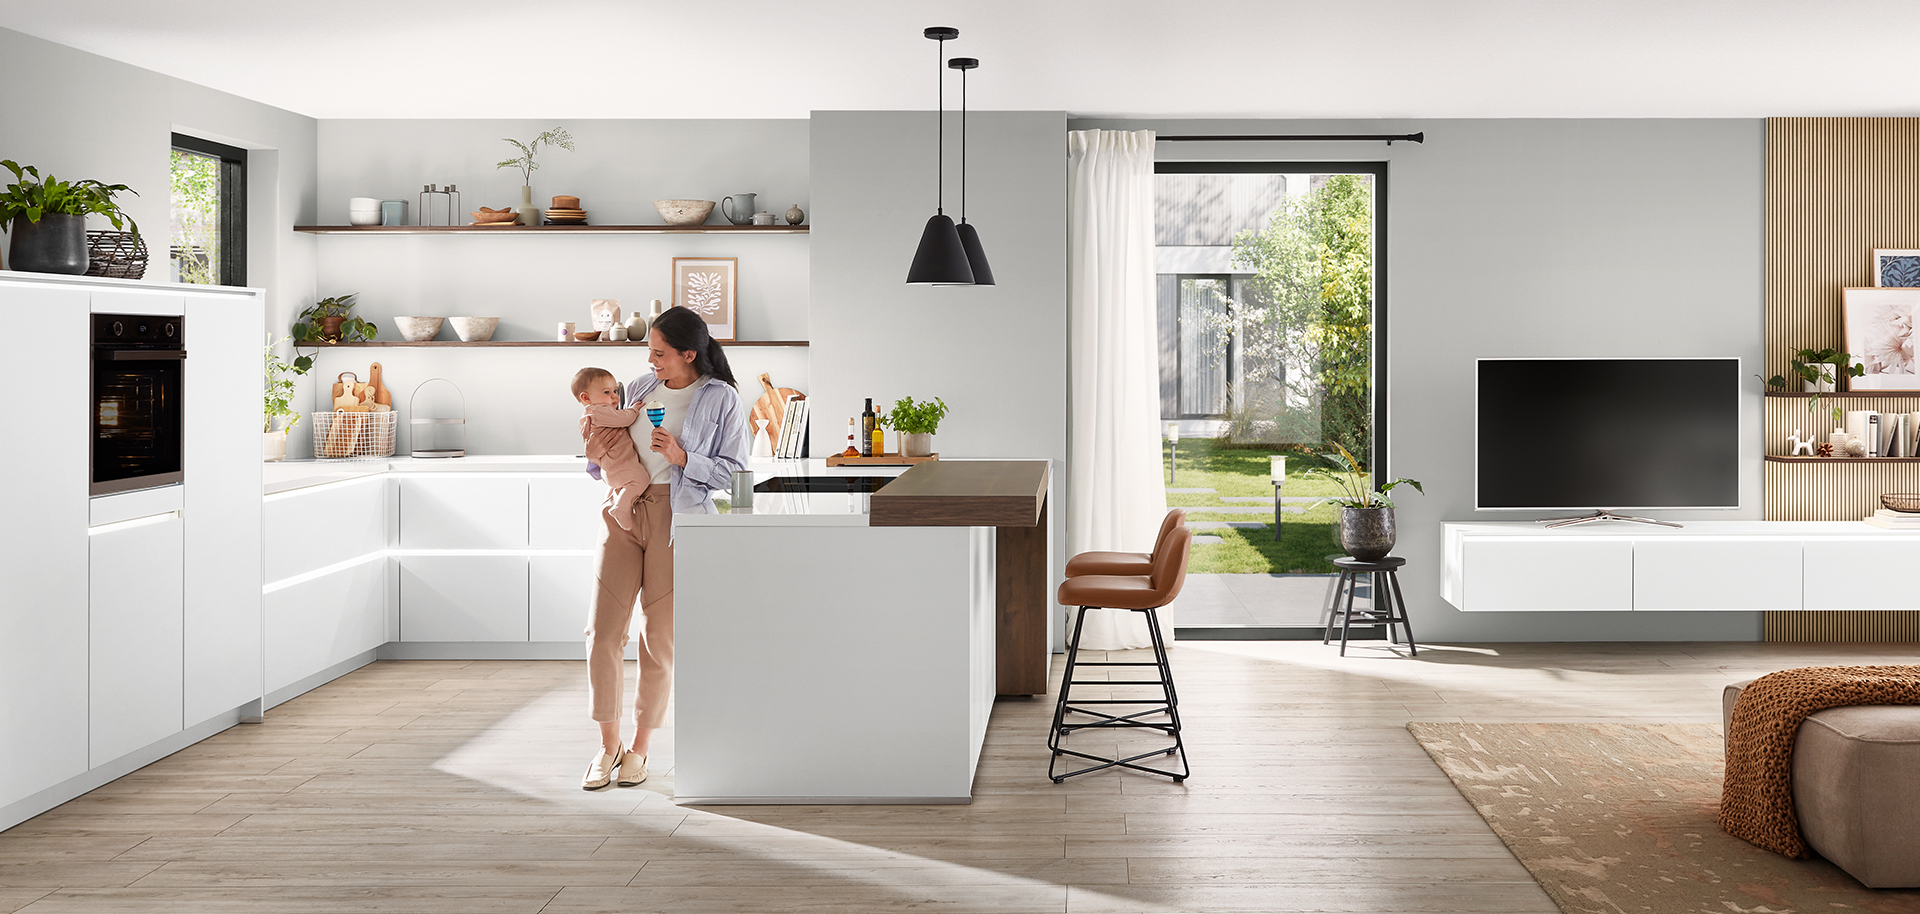 Moderne Kücheninnenräume mit sauberem, minimalistischem Design, weißen Schränken, einer zentralen Insel und einer jungen Mutter, die liebevoll ihr Kind hält.